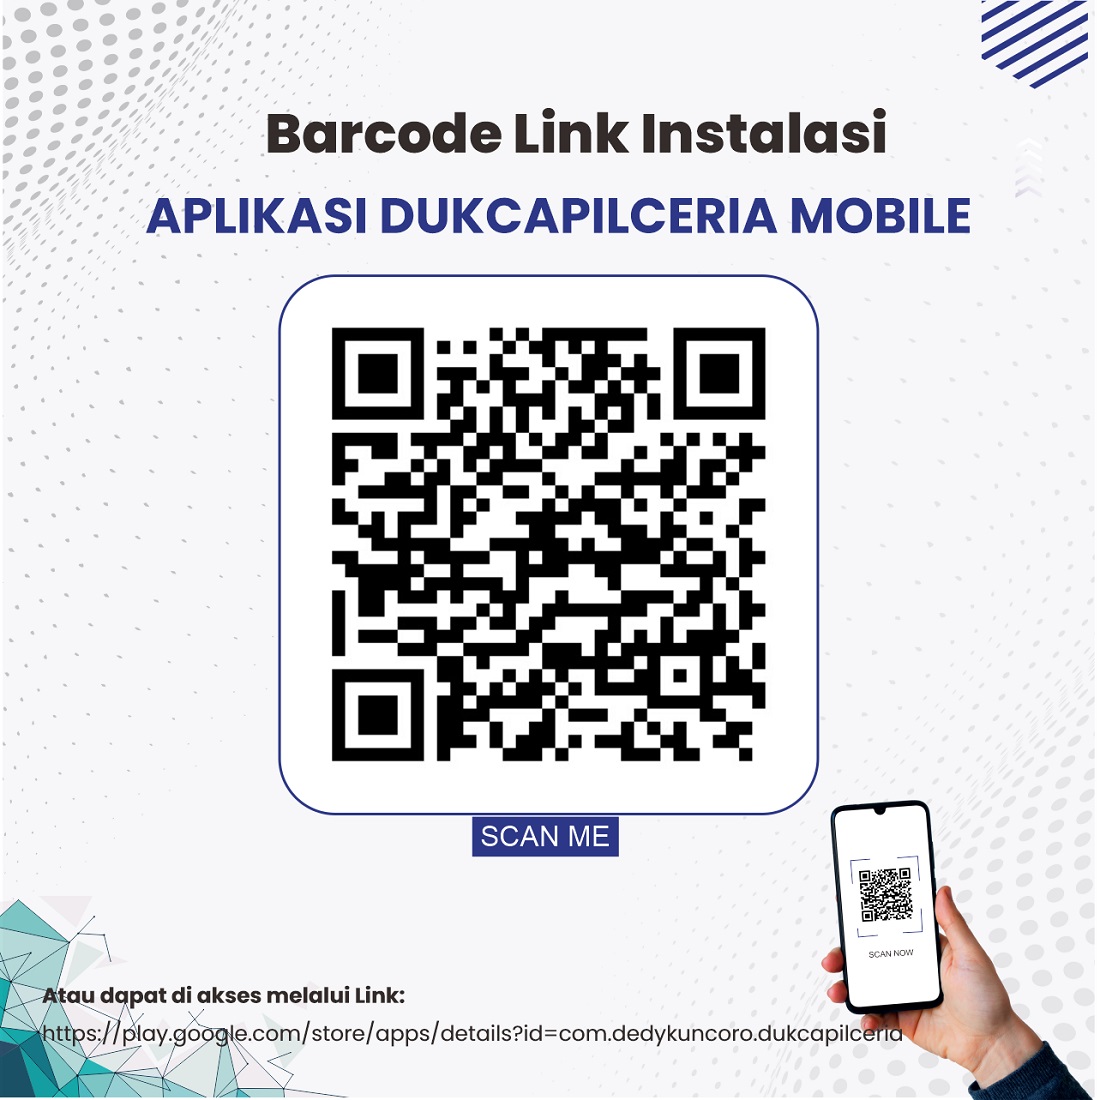 Download Aplikasi Dukcapil Ceria Mobile (DCM)